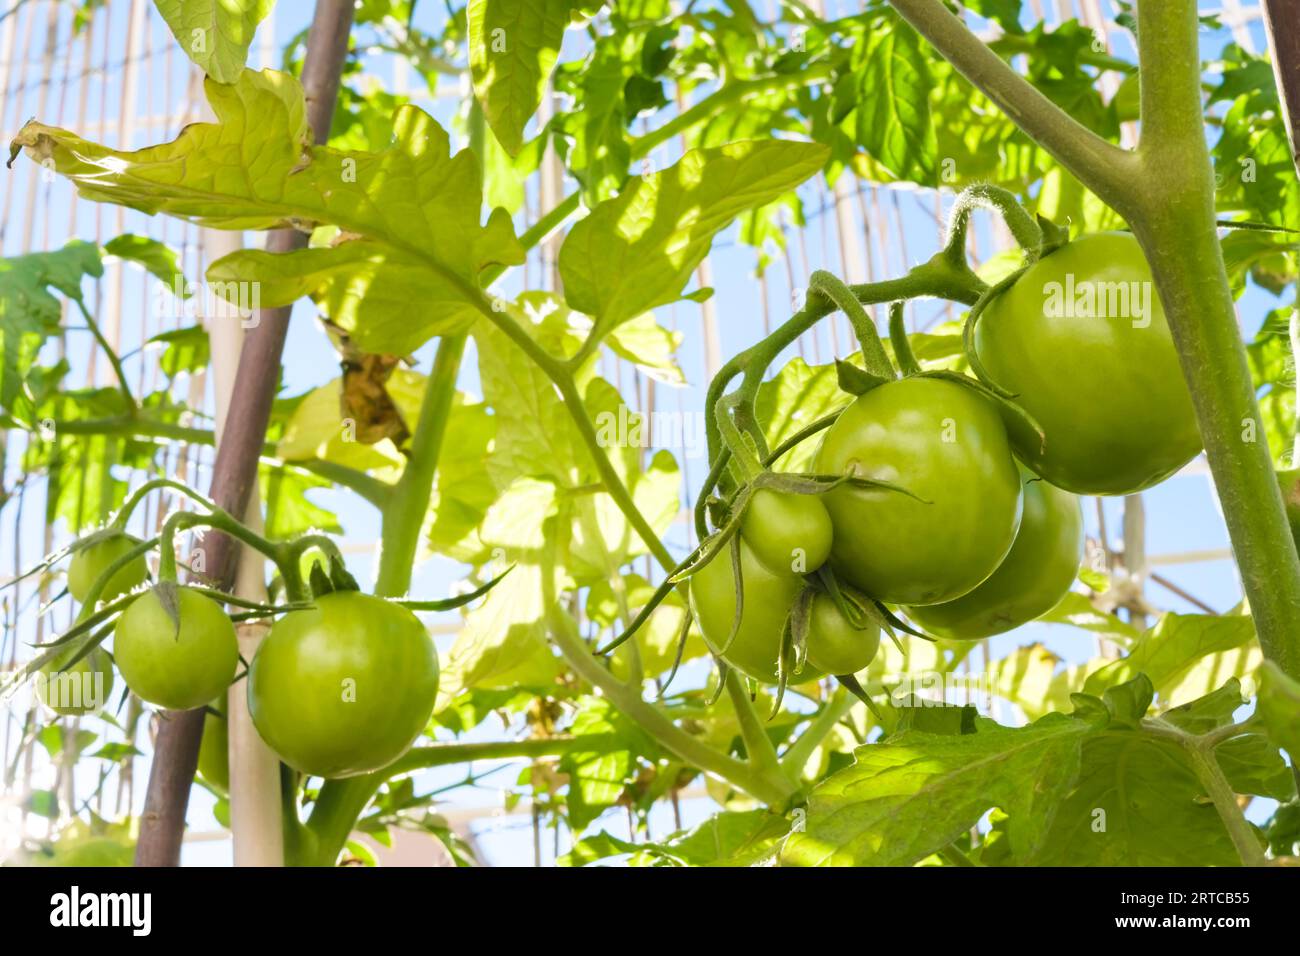 Immer noch grüne Tomaten in einem Bündel auf dem Zweig der Tomatenpflanze. Stockfoto